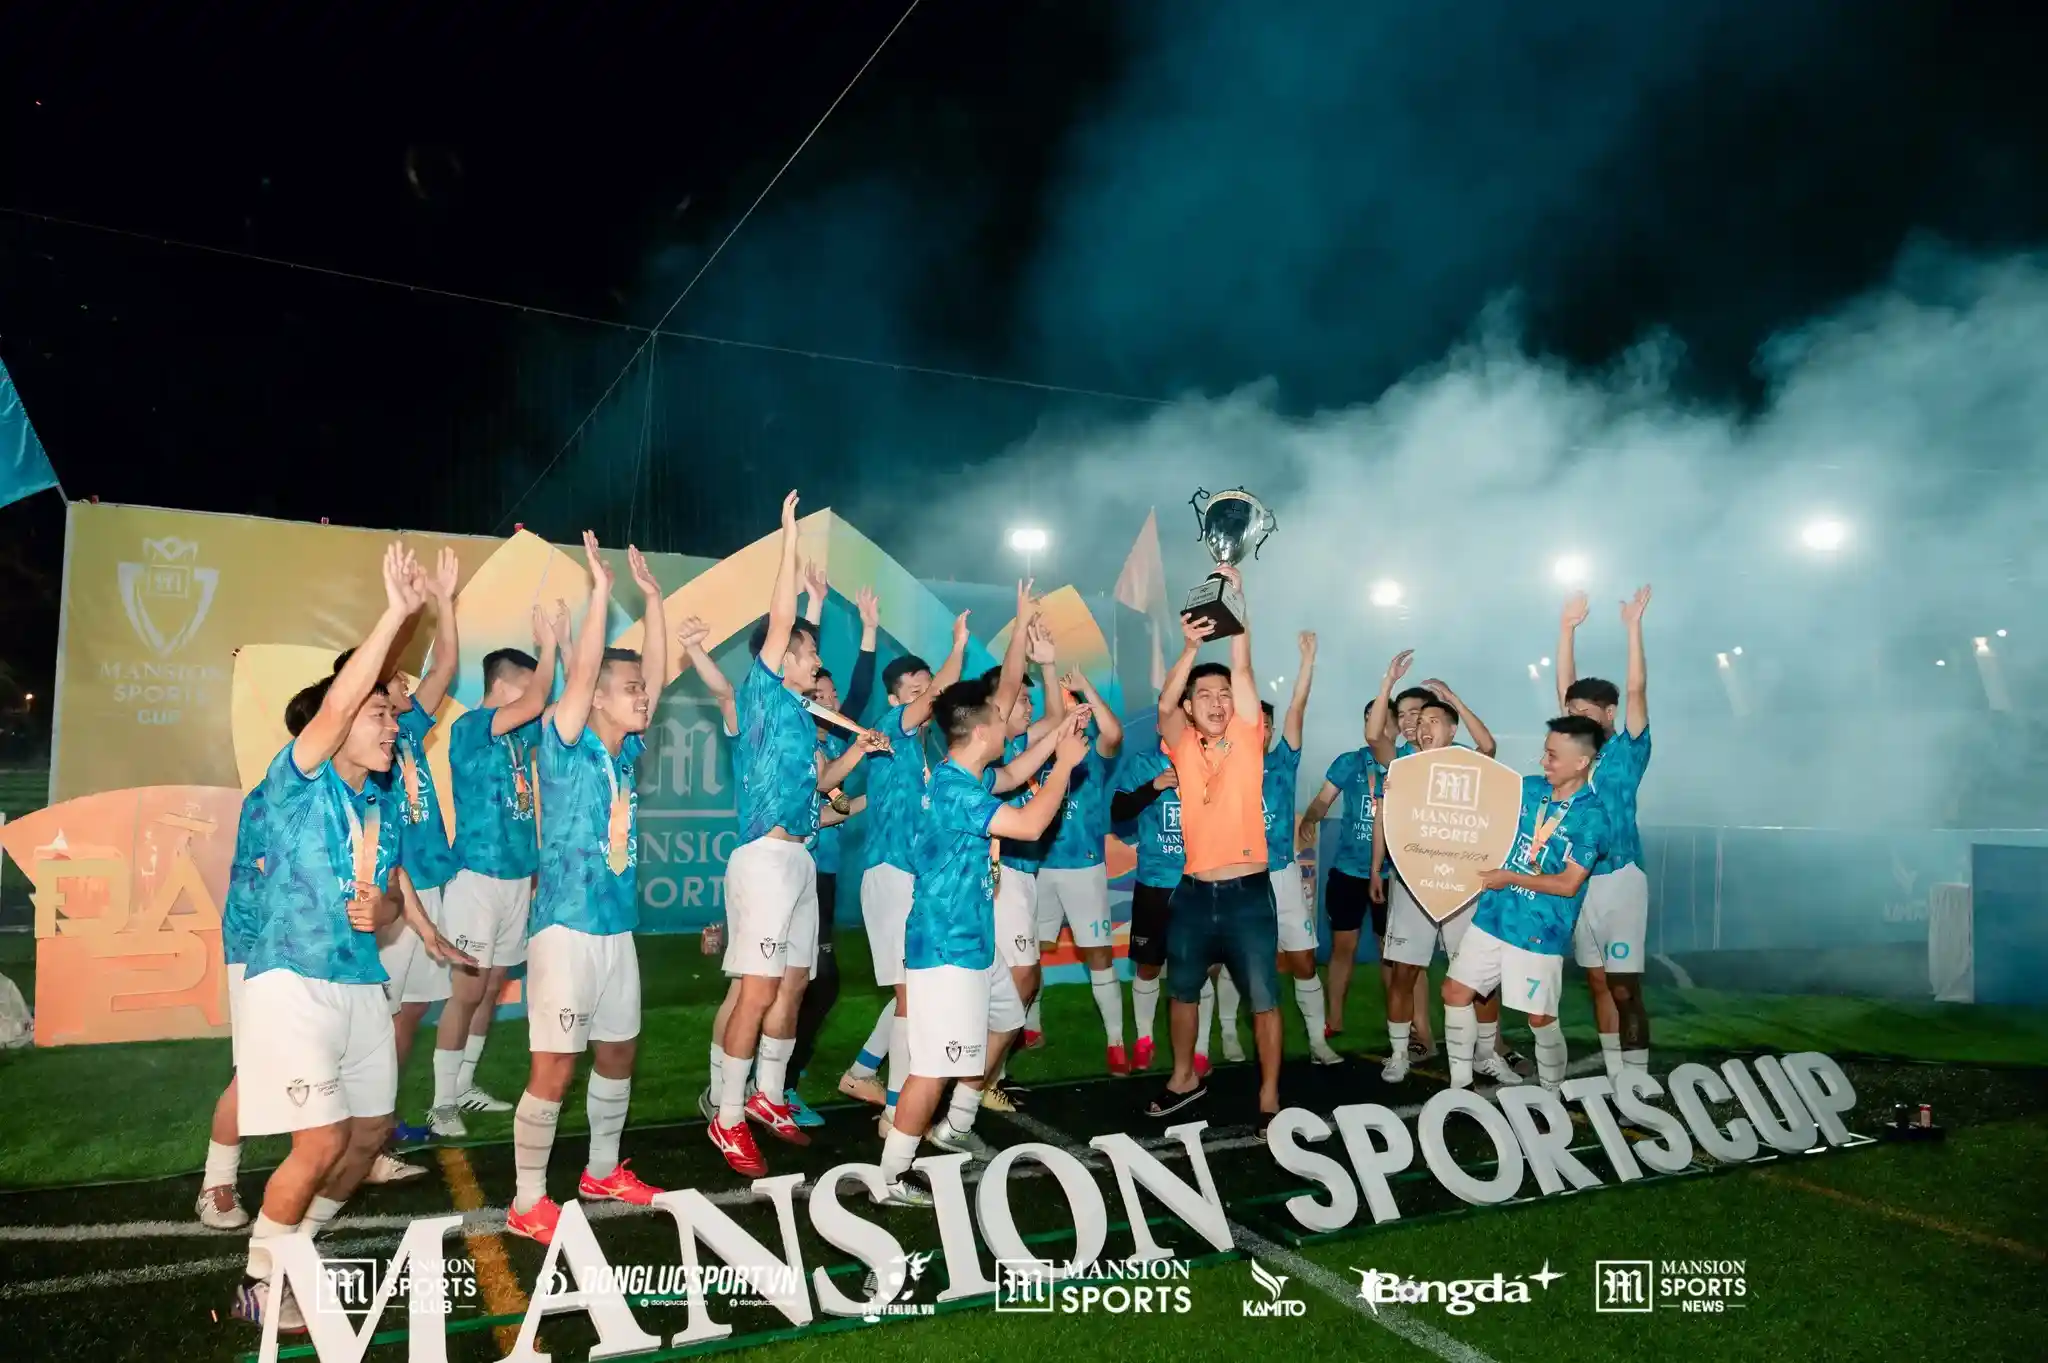 Highlight bán kết và chung kết Mansion Cup Đà Nẵng